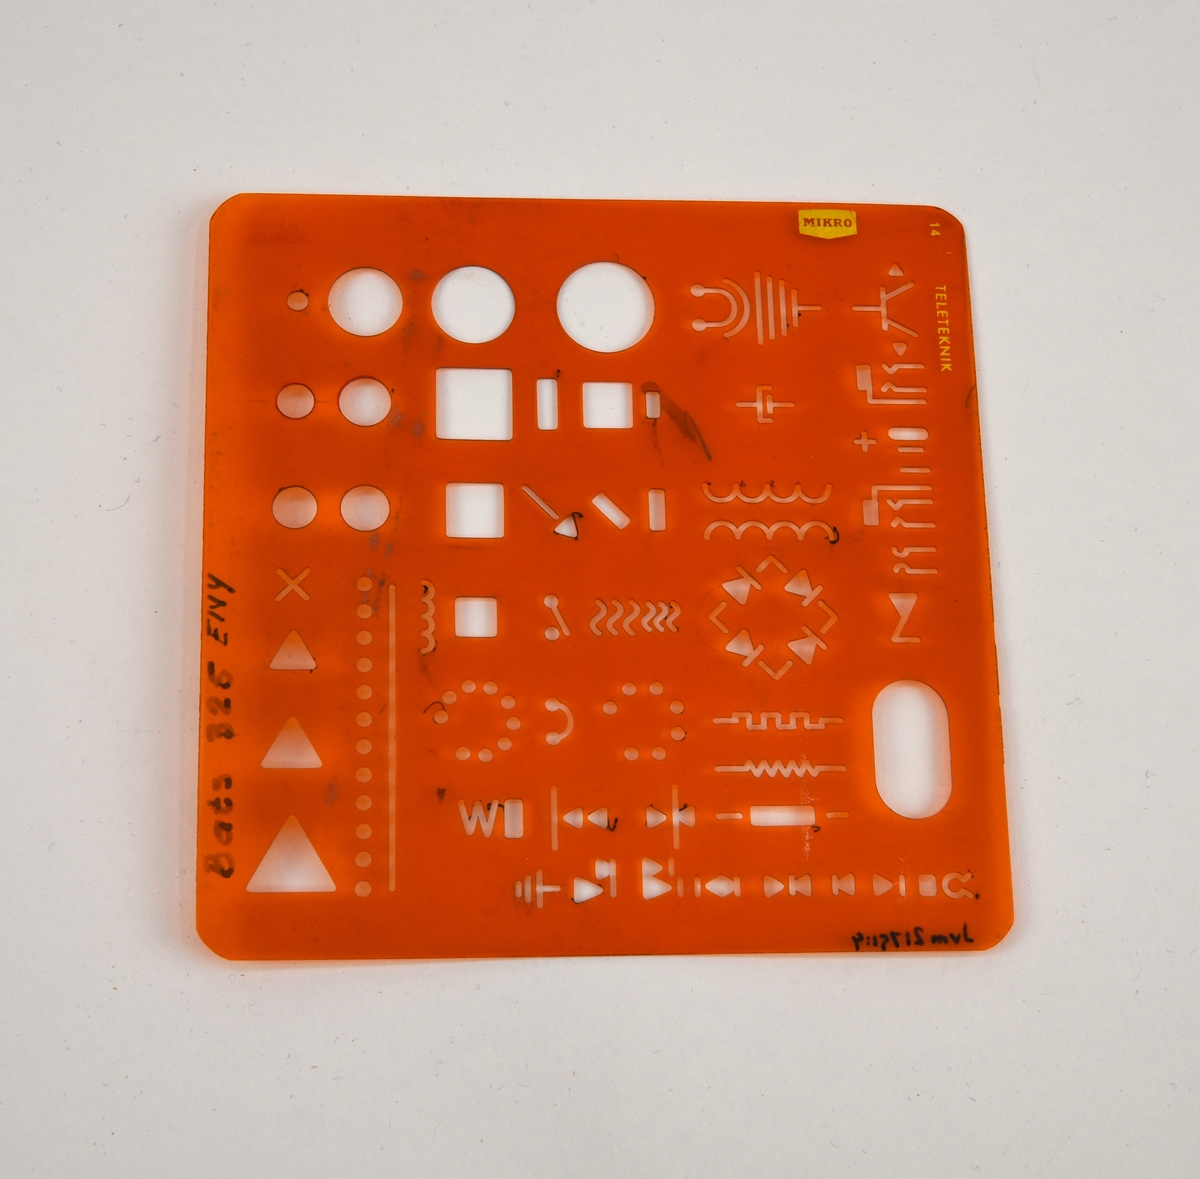 Ritningsmall för teleteknik av orange, genomskinlig halvmjuk plast. På mallen finns olika elektrotekniska symboler som diodbrygga, jordpunkt, motstånd, telejack och så vidare. Mallen är märkt "Bats 325 EIVY" i tusch.